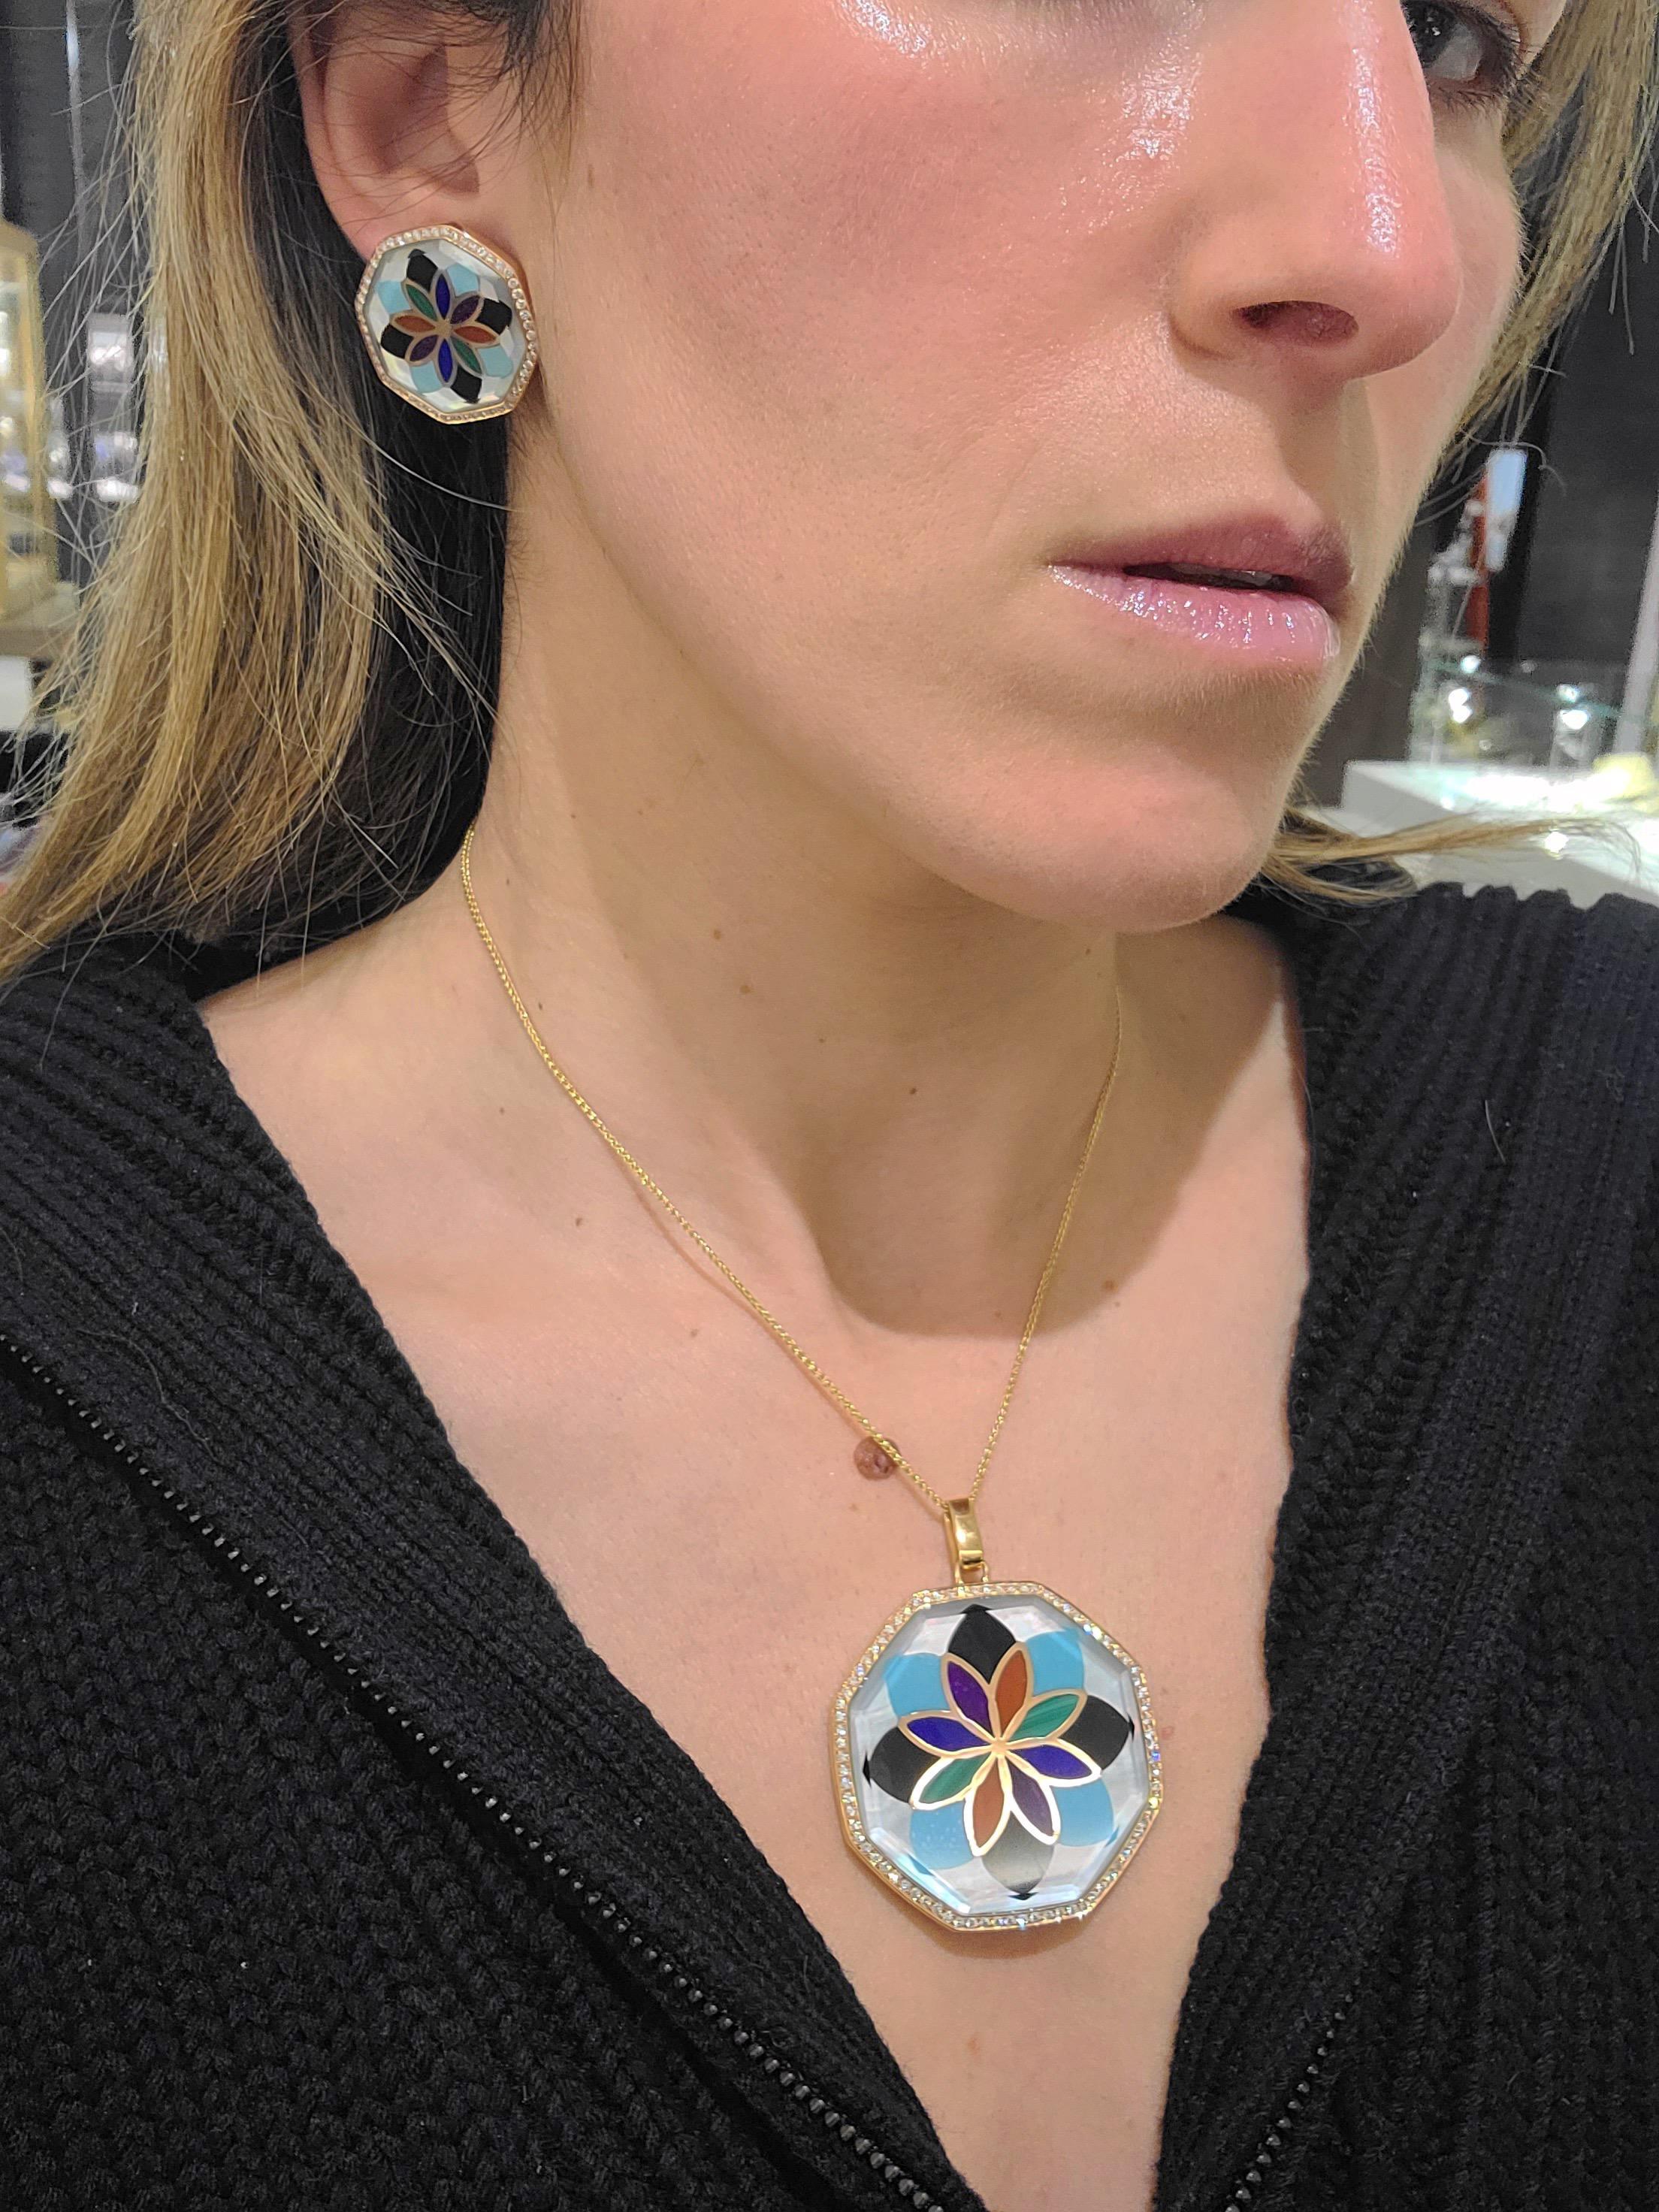 Conçu par AschGrossbardt, cet impressionnant médaillon présente des incrustations de turquoise, d'onyx, de corail, de malachite, de lapis-lazuli et de nacre blanche dans un motif de fleur en mosaïque. Un cristal de roche biseauté repose sur la fine